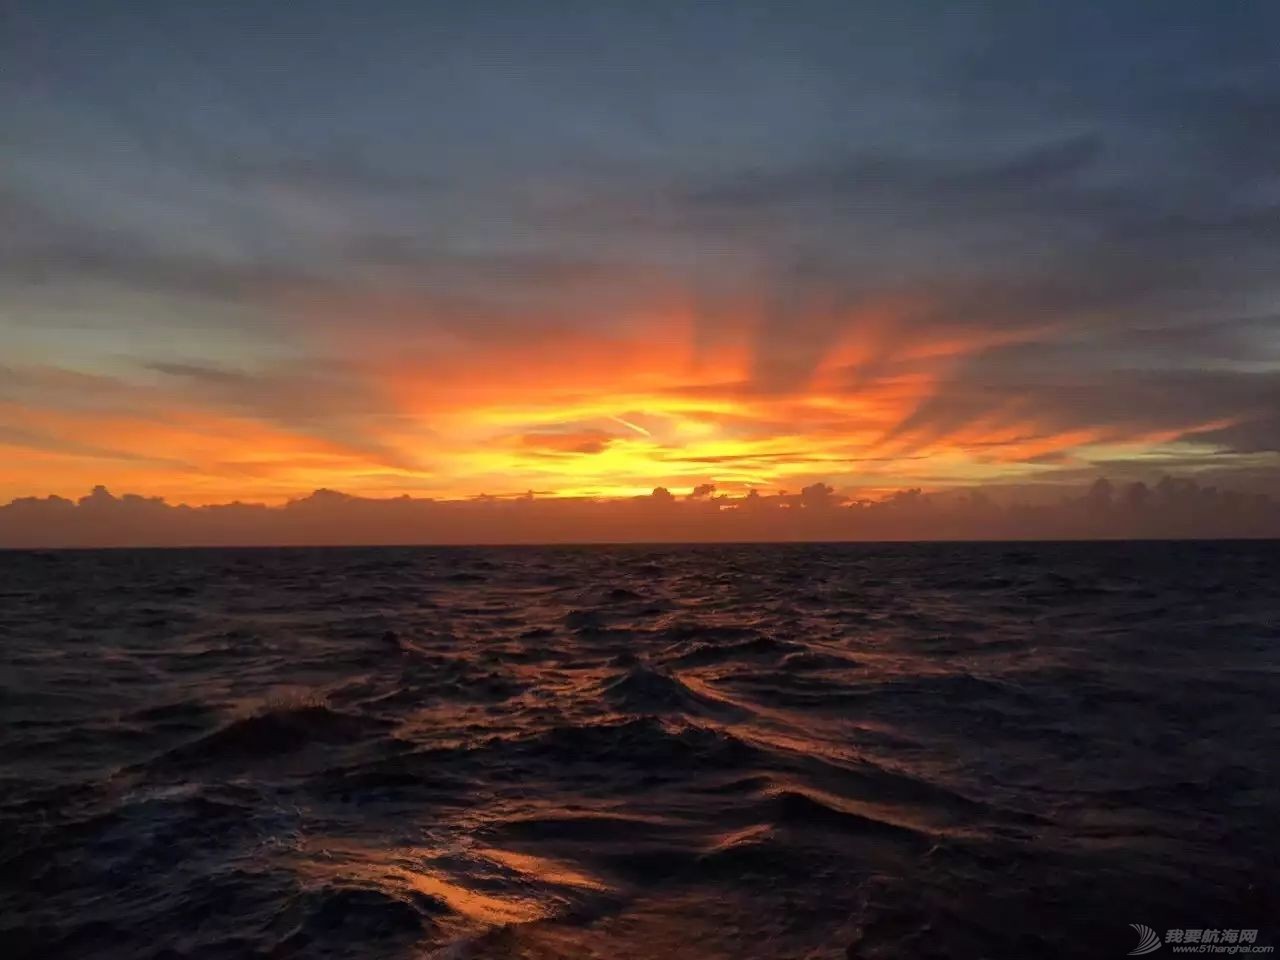 太阳初升时,忽然有十万支金喇叭齐鸣!我在帆船上迎接黎明……w2.jpg